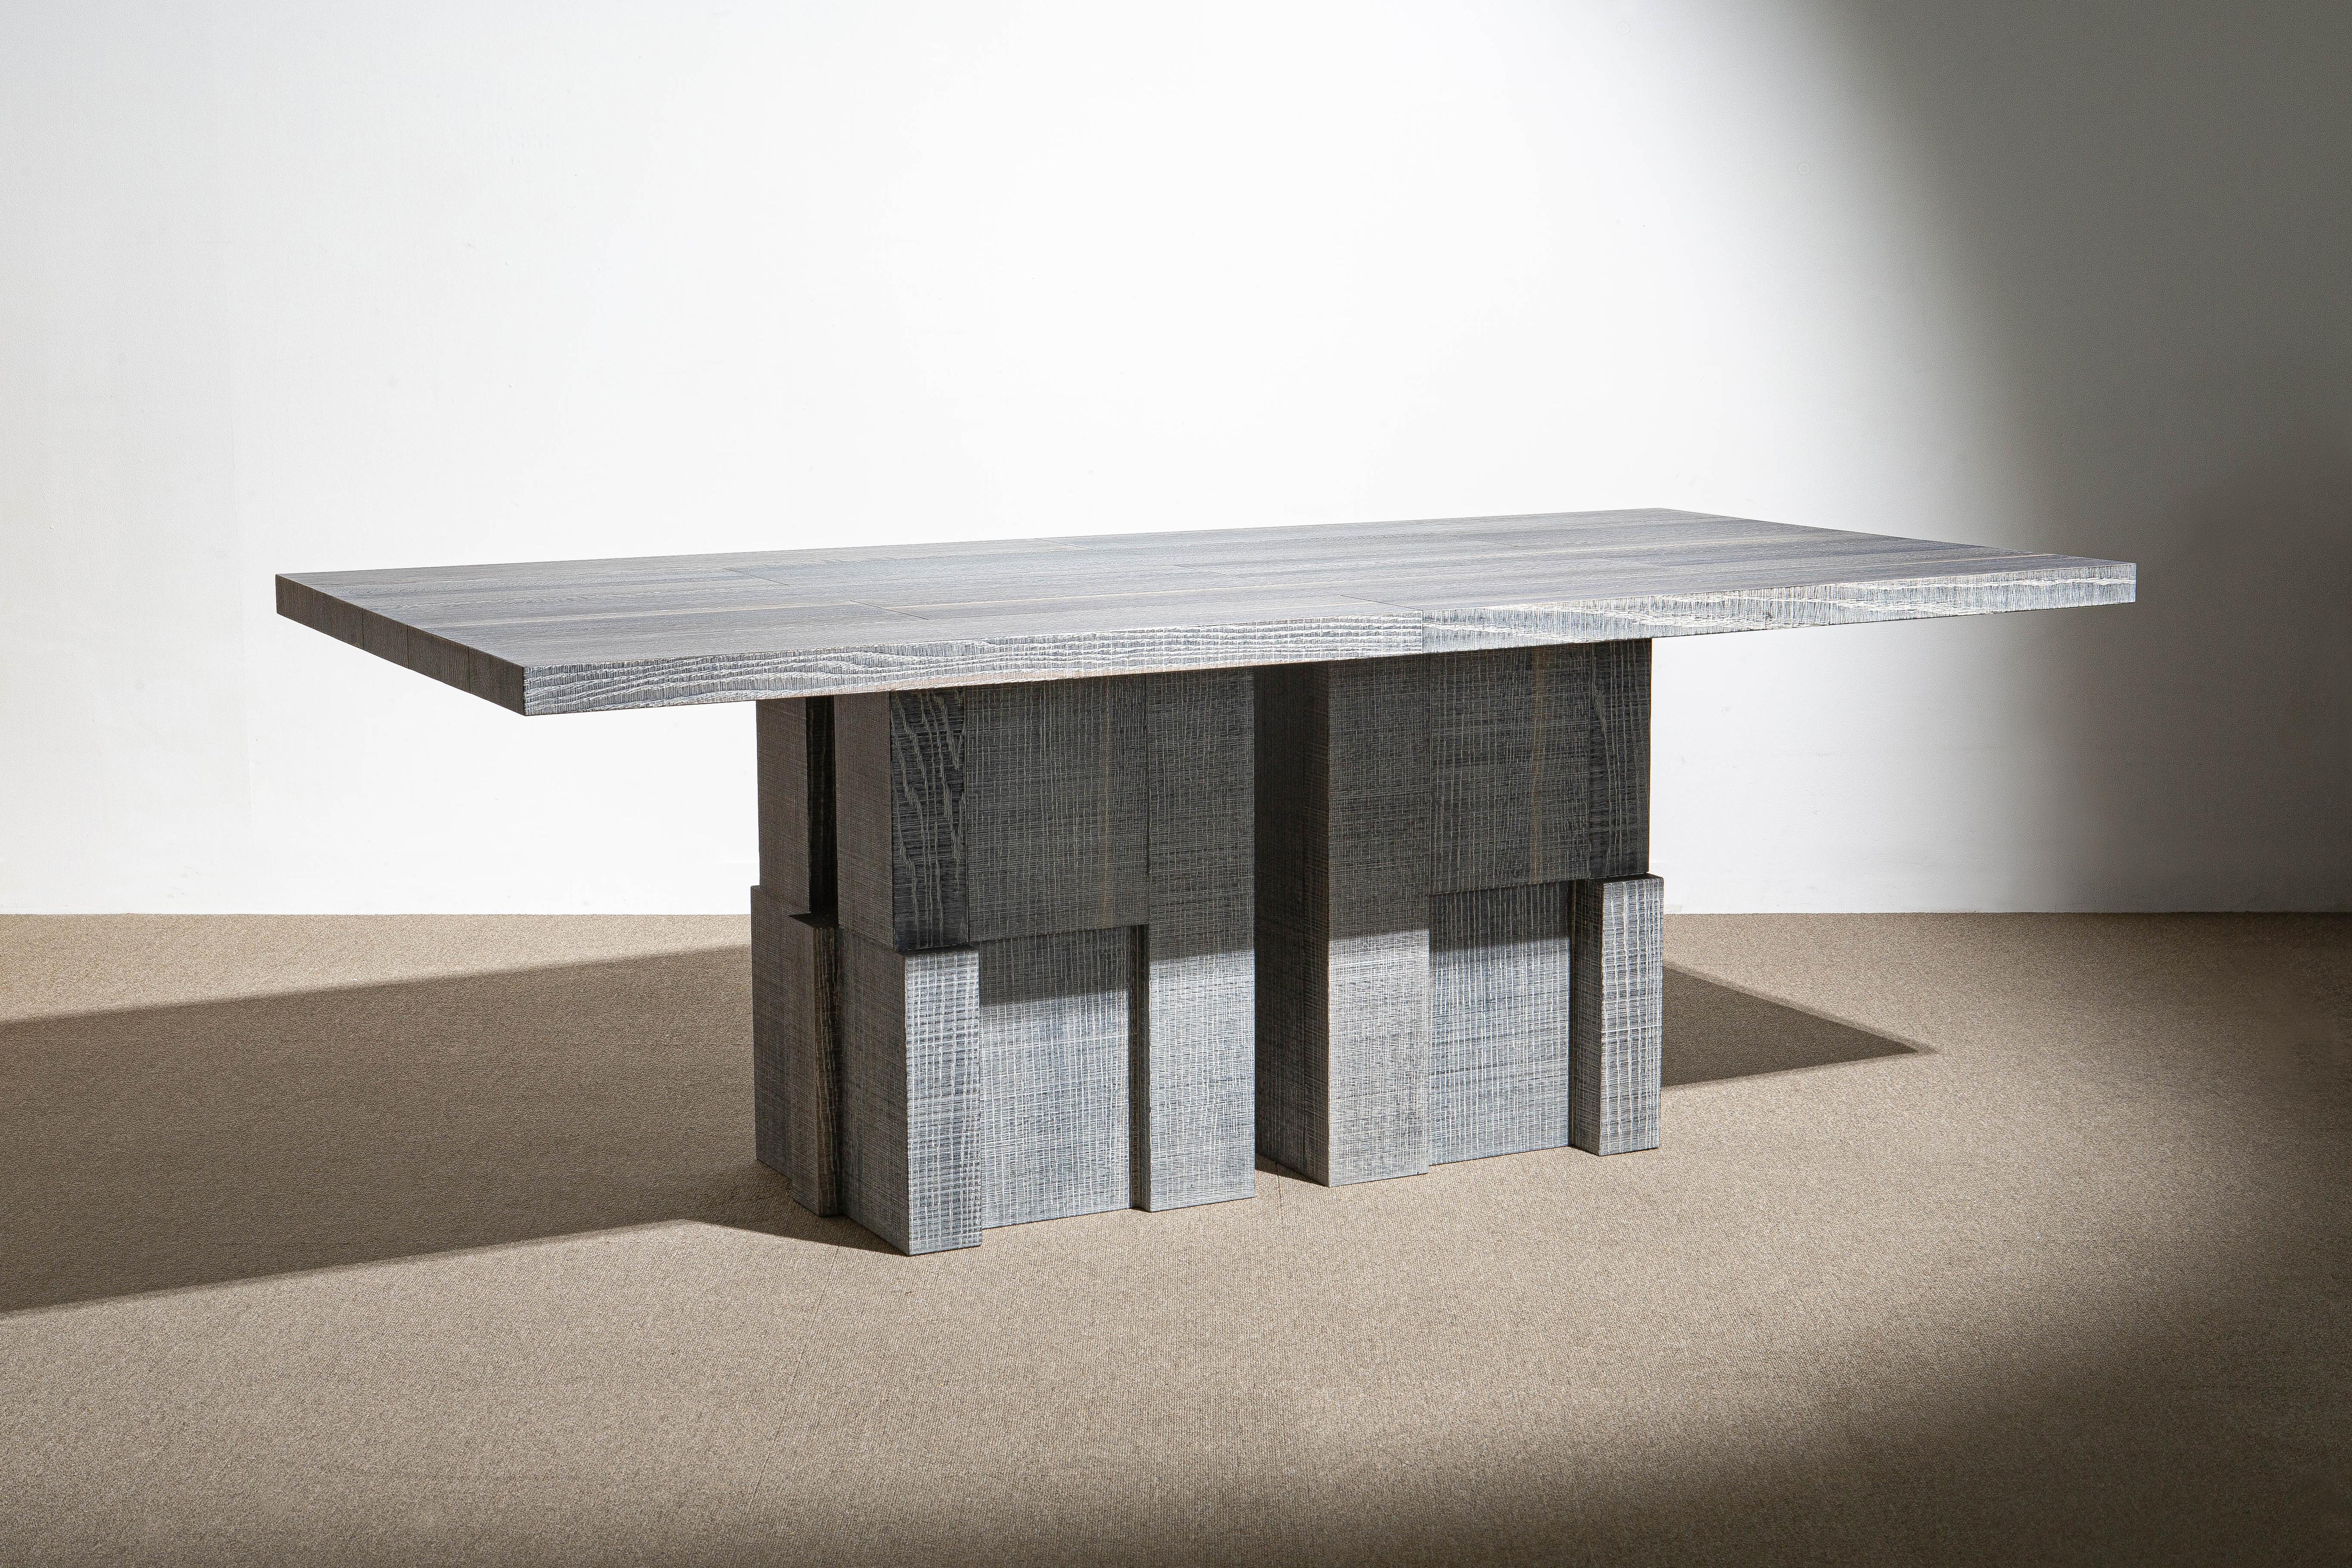 Weißer Tisch aus geschichtetem Eichenholz von Hyungshin Hwang
Abmessungen: T 200 x B 100 x H 75 cm
MATERIALIEN: oxidierte Roteiche

Layered Series ist das Hauptthema und Konzept der Arbeit von Hwang, der sein Experiment fortsetzt, das auf der